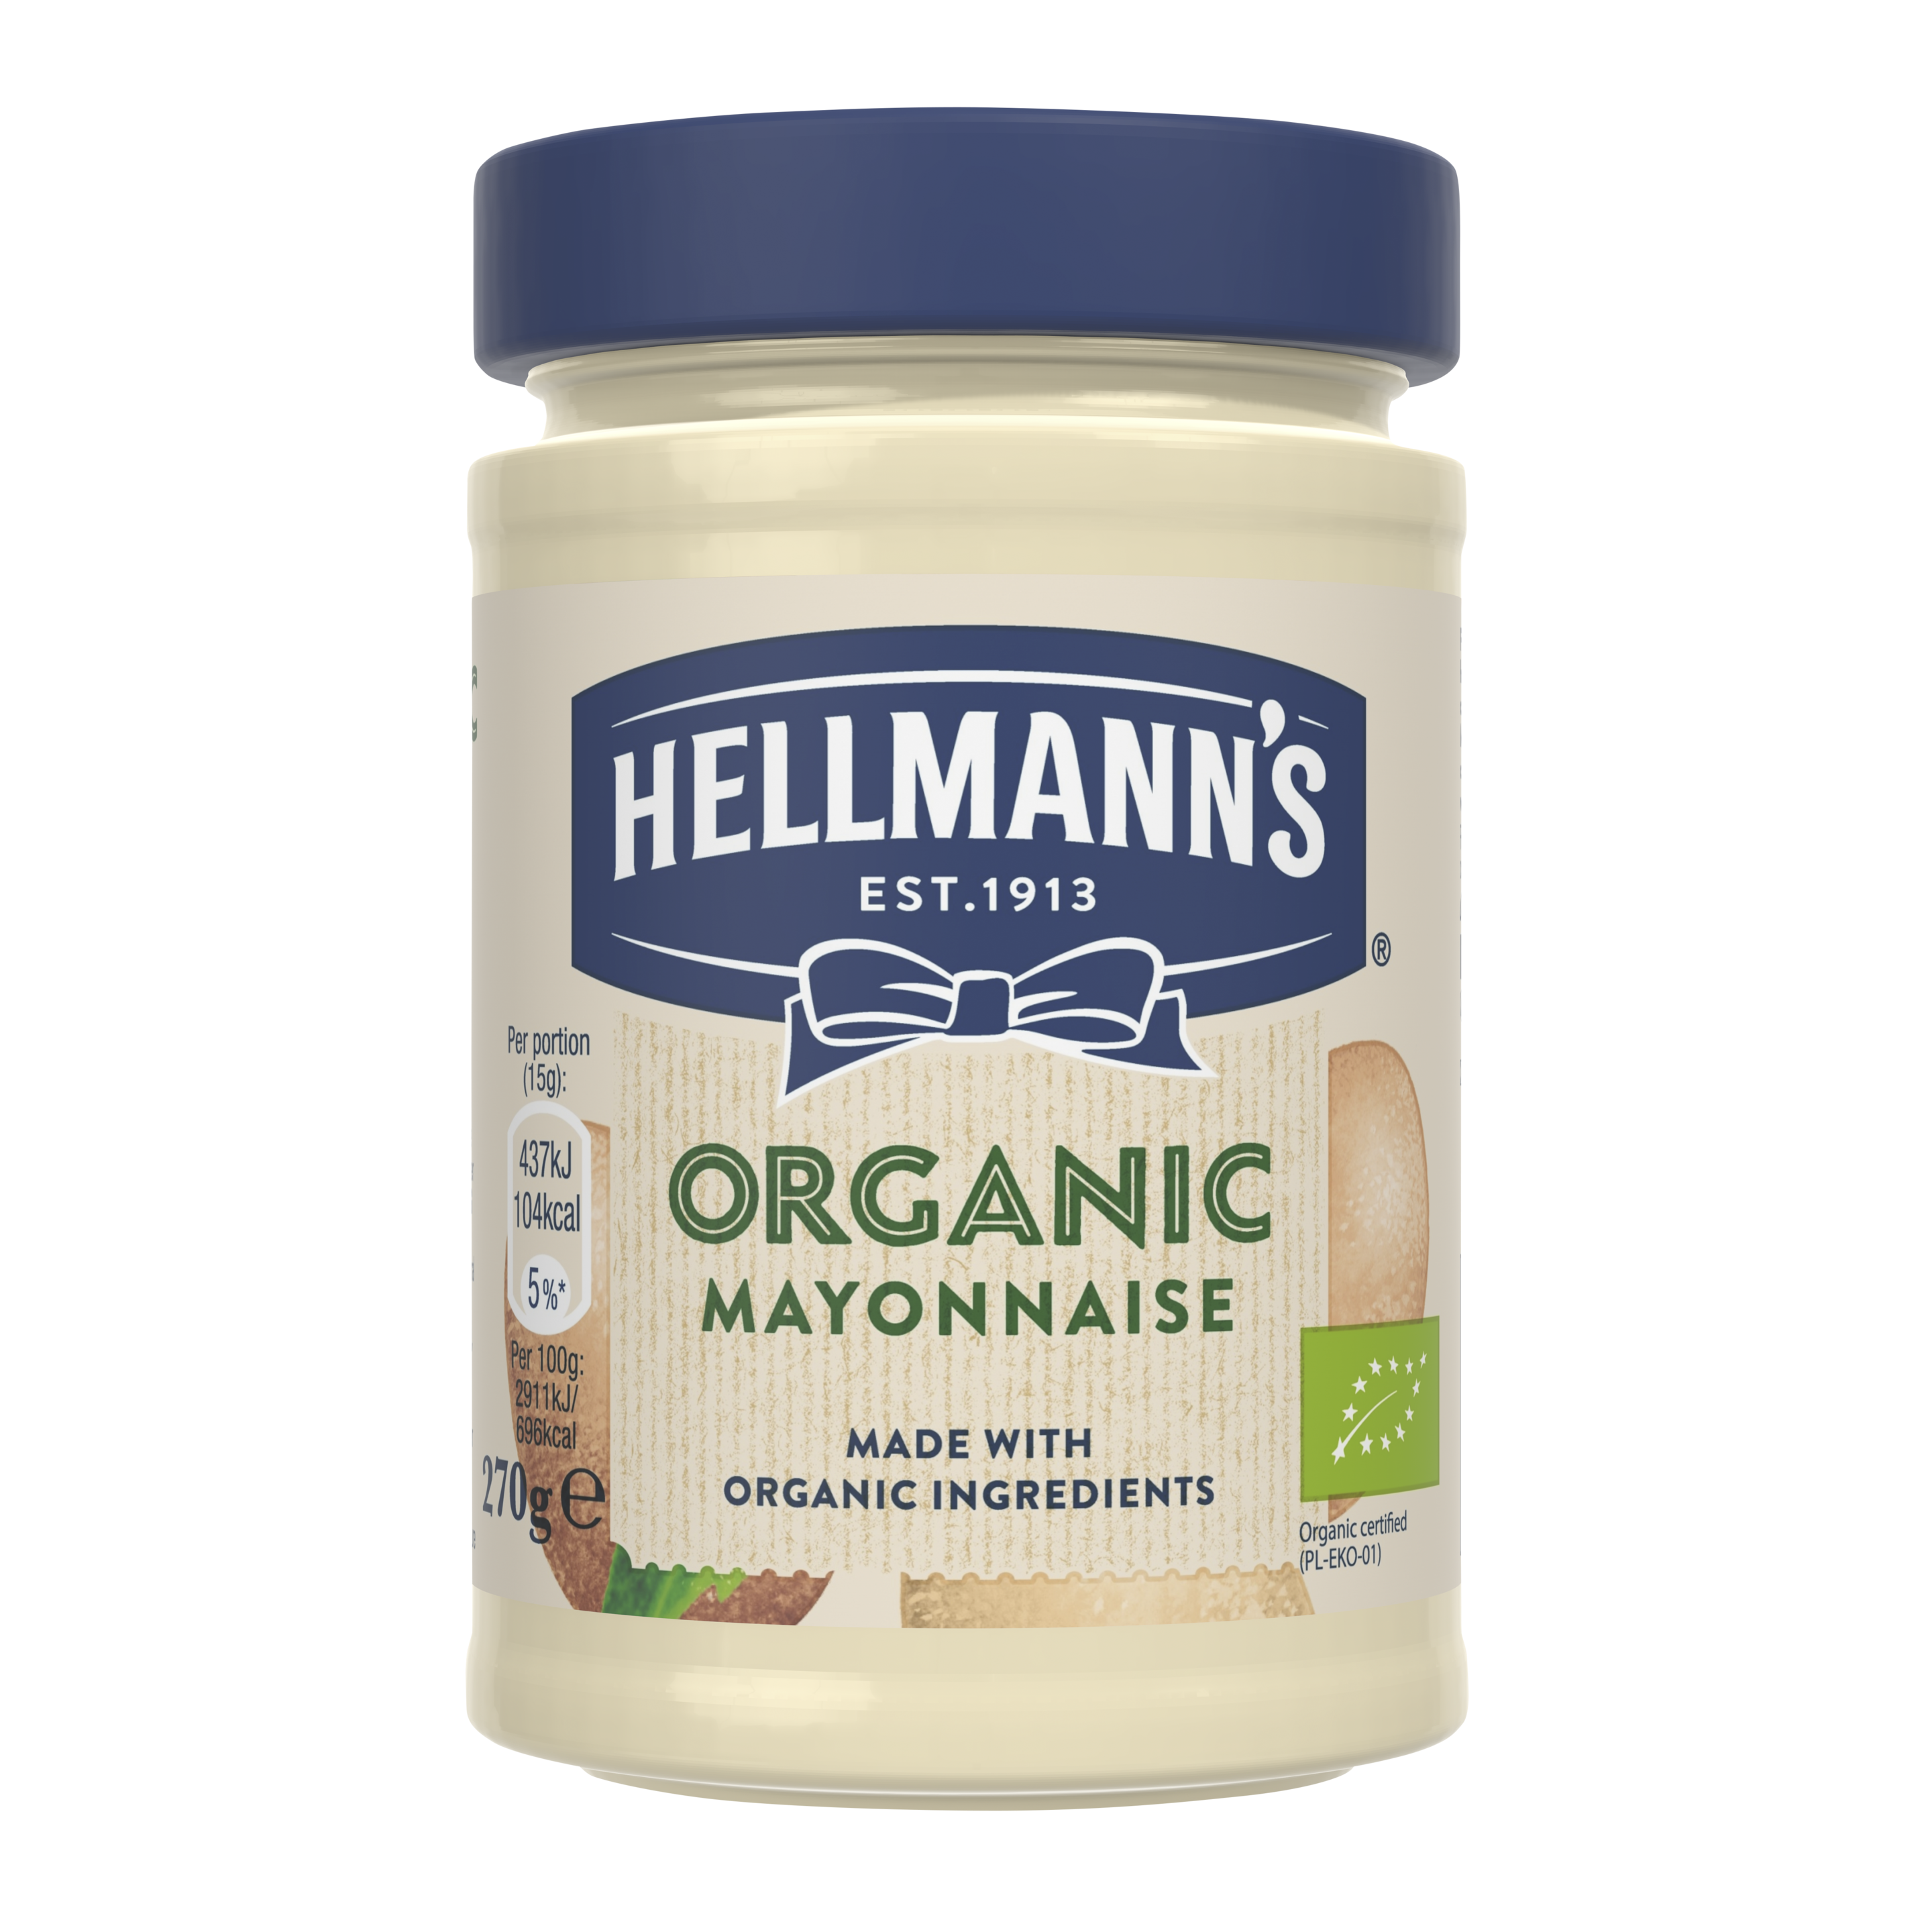 Hellmann's Organic Mayonnaise